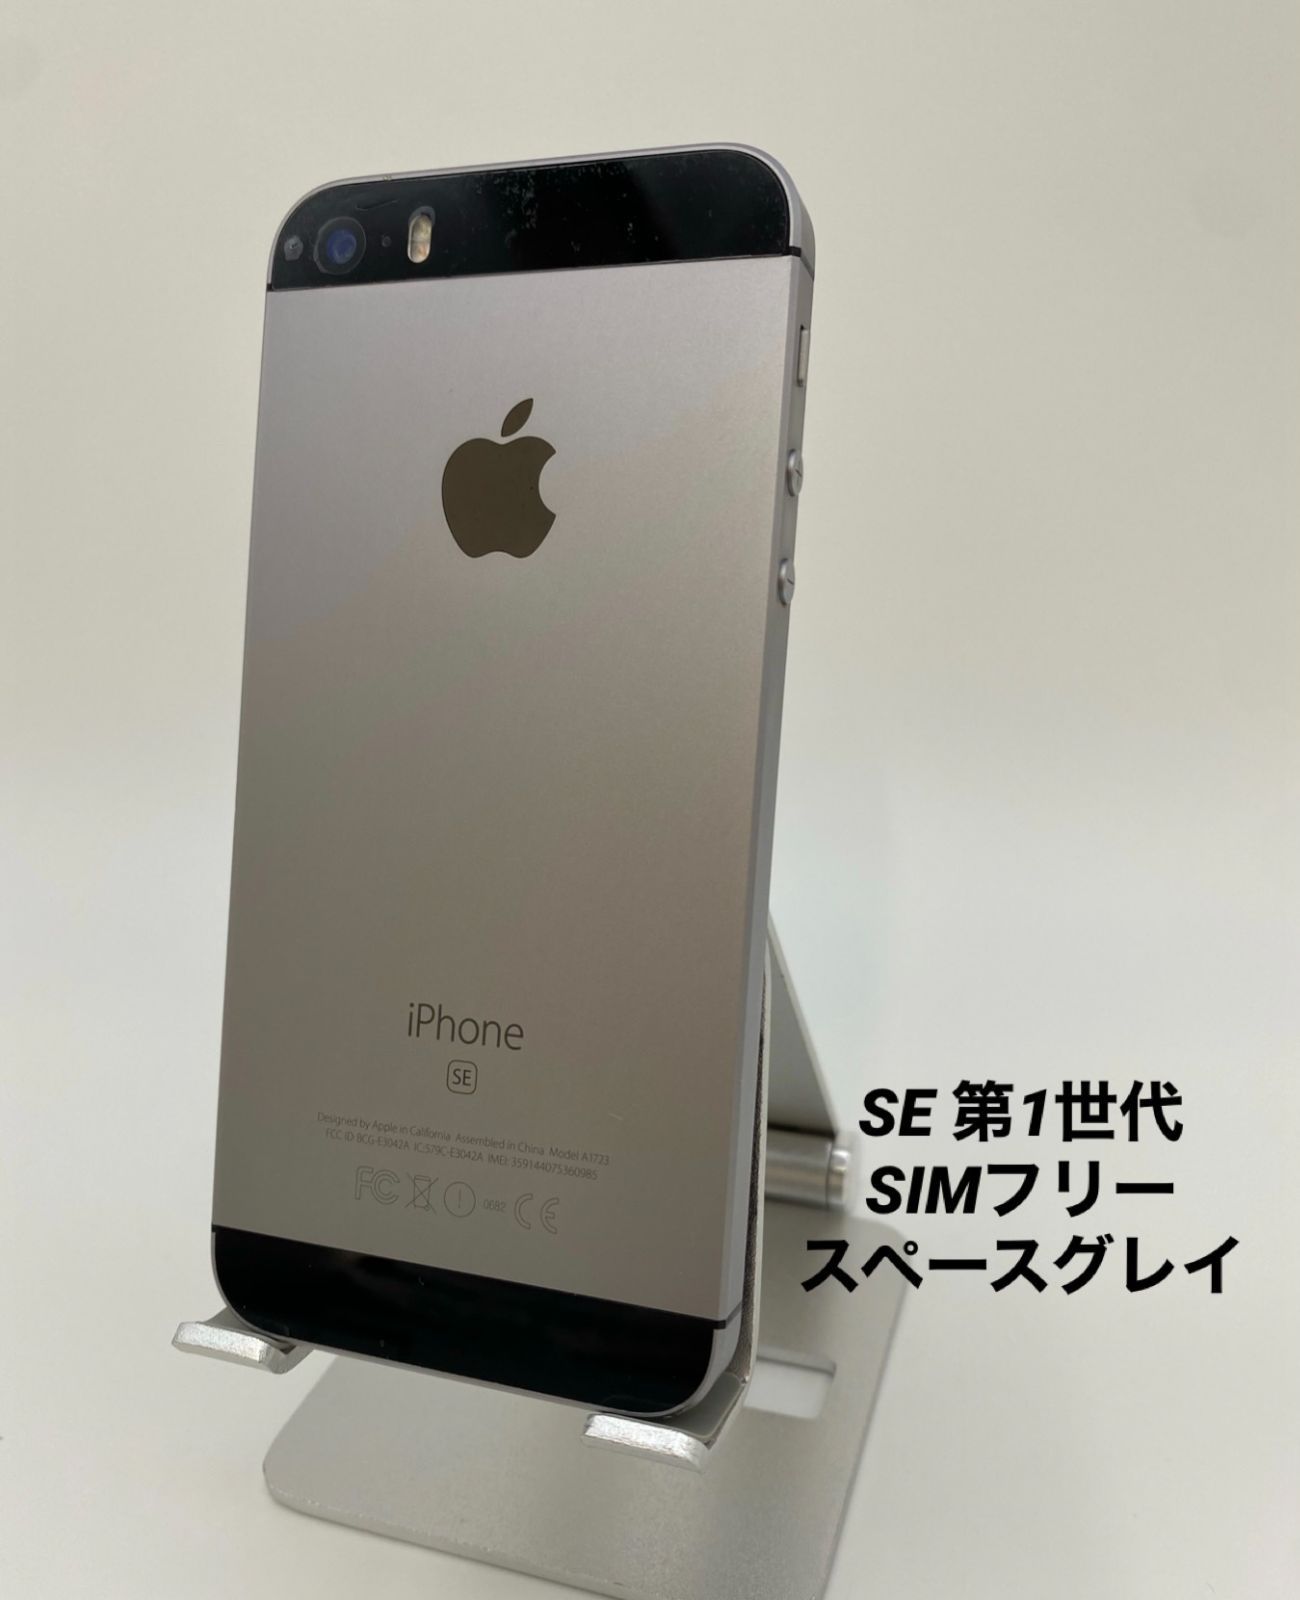 iPhone SE 32GB バッテリー新品 100% SIMフリー-